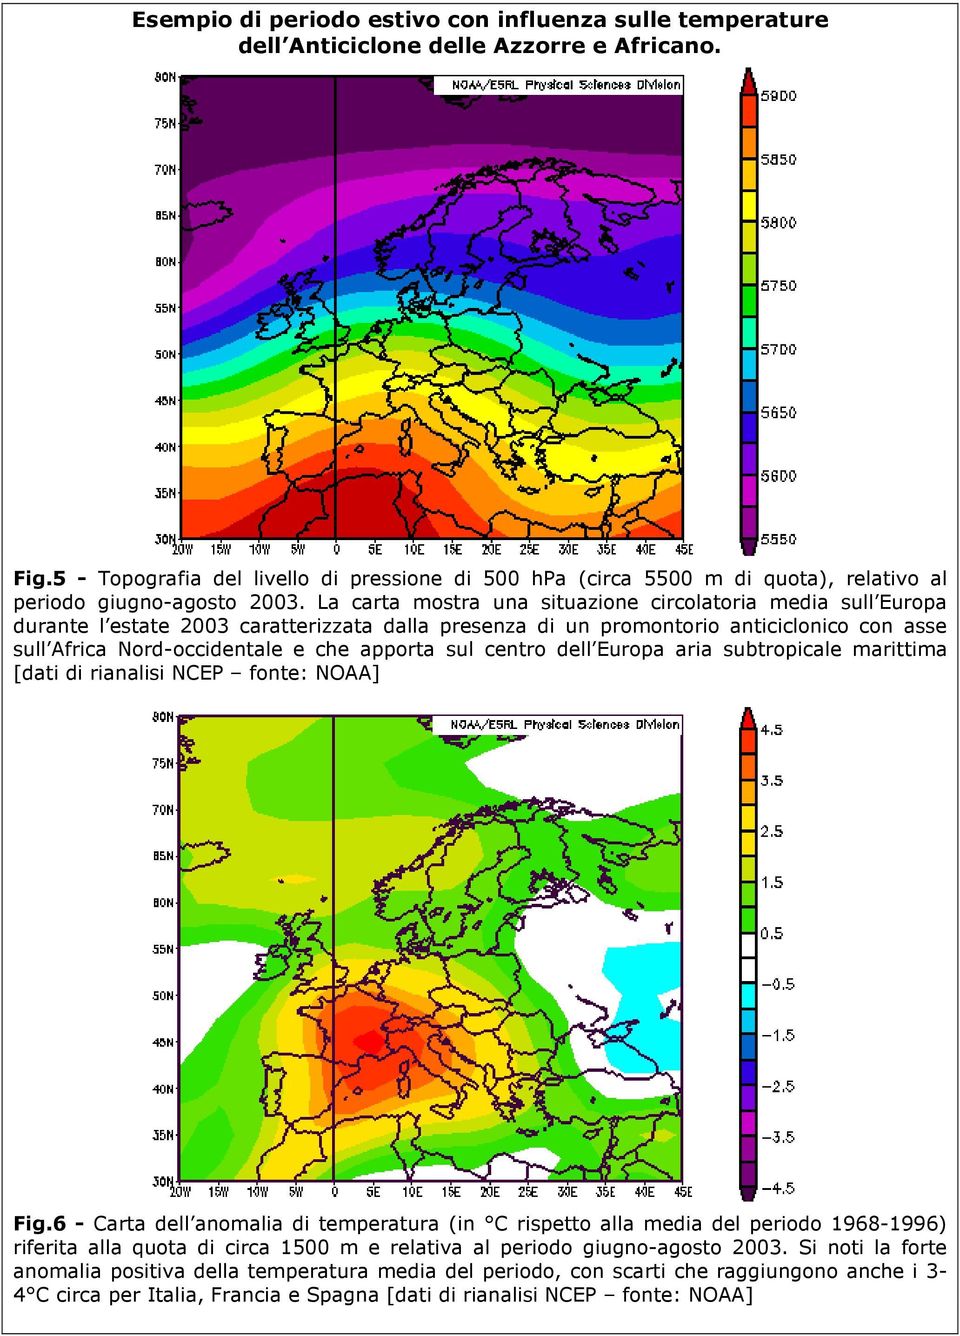 La carta mostra una situazione circolatoria media sull Europa durante l estate 2003 caratterizzata dalla presenza di un promontorio anticiclonico con asse sull Africa Nord-occidentale e che apporta